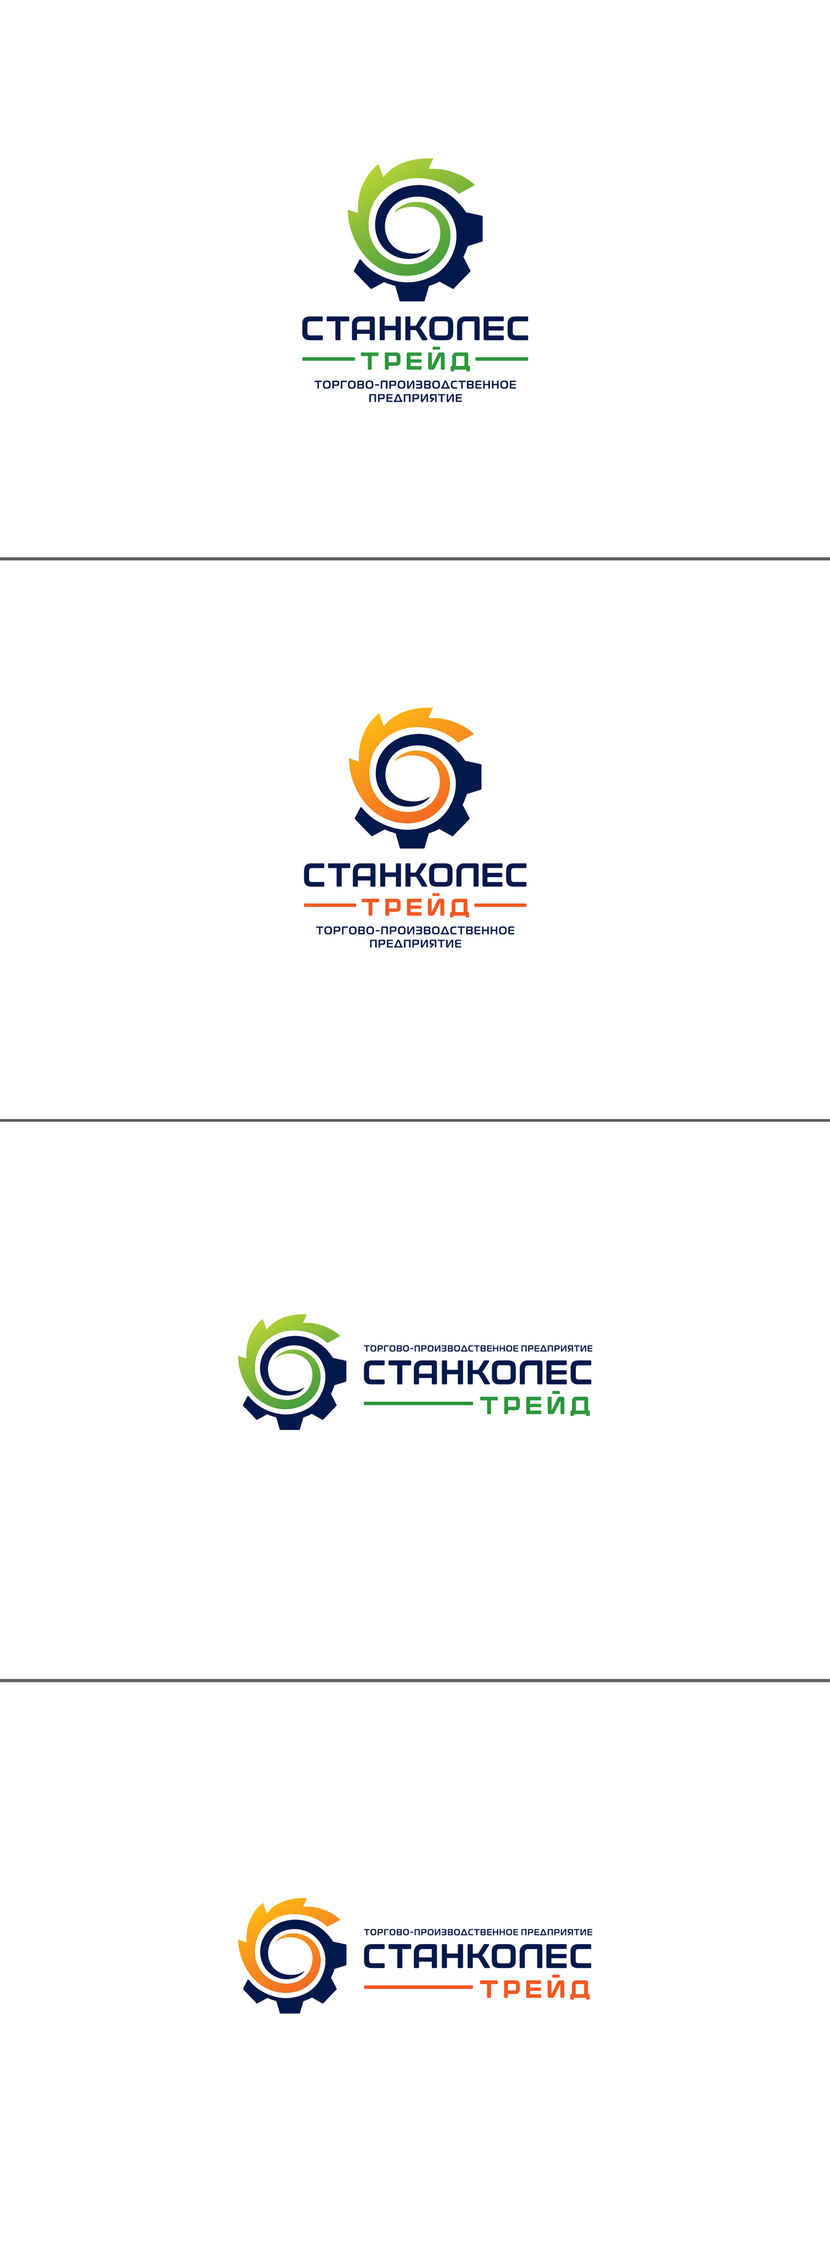 Создание логотипа для компании, которая занимается производством станков